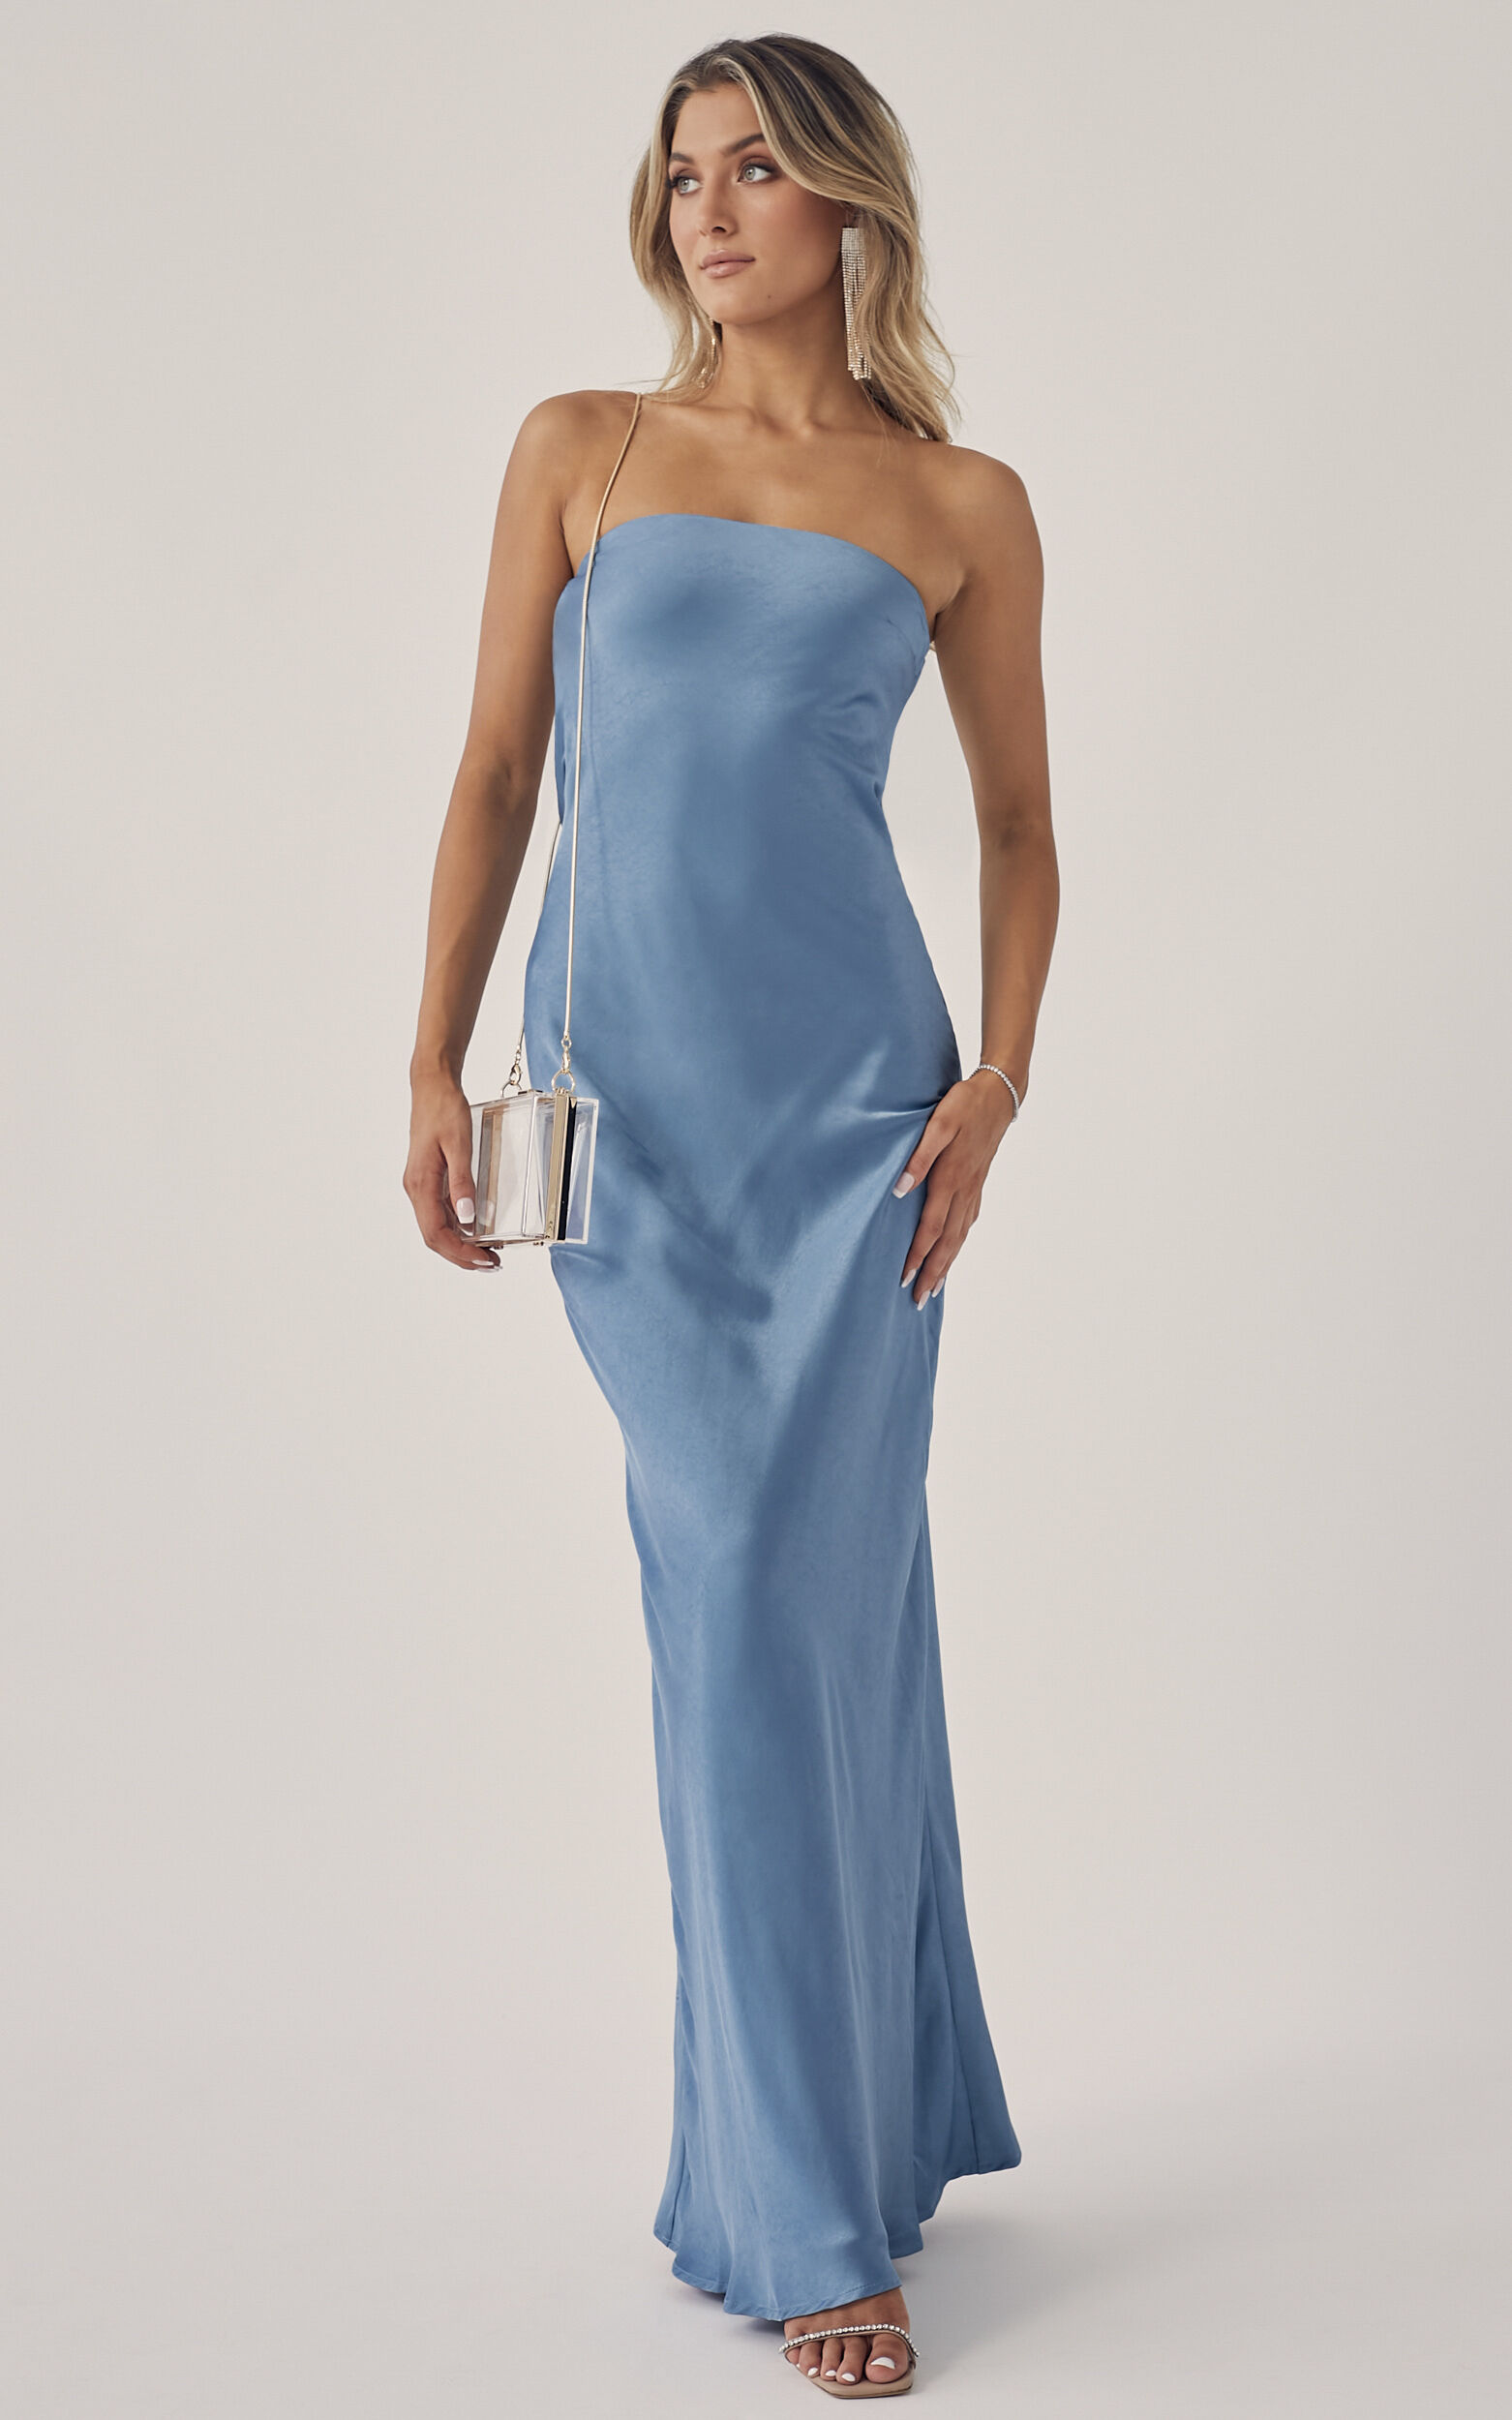 Afwijken Voorlopige Uitscheiden Charlita Strapless Cowl Back Satin Maxi Dress in Steel Blue | Showpo USA